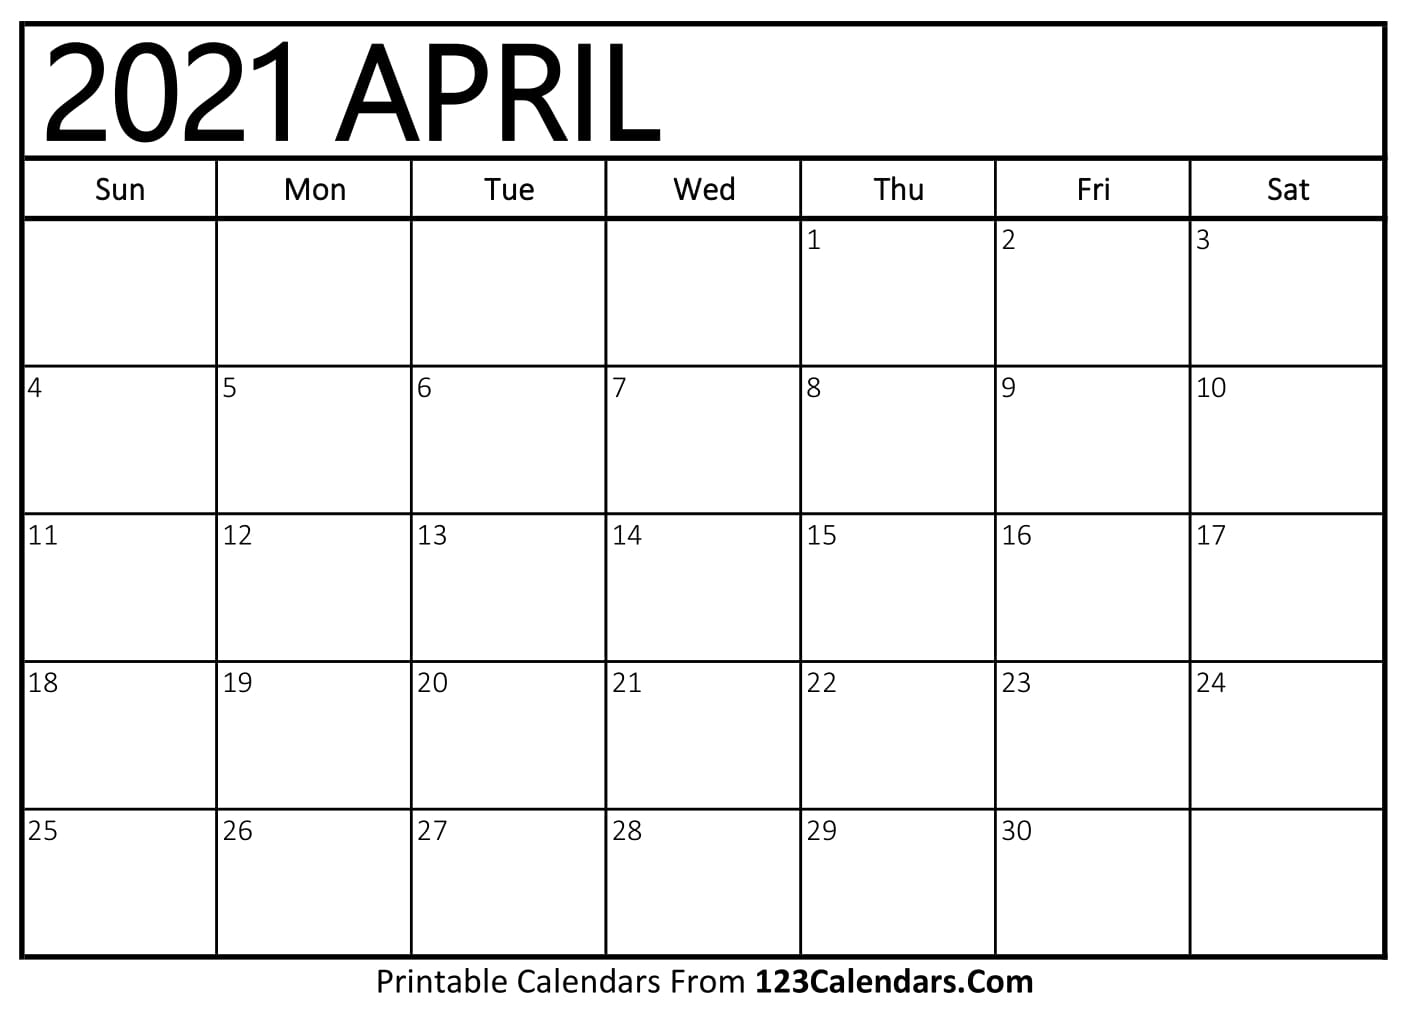 Printable April 2021 Calendar Templates | 123Calendars.com